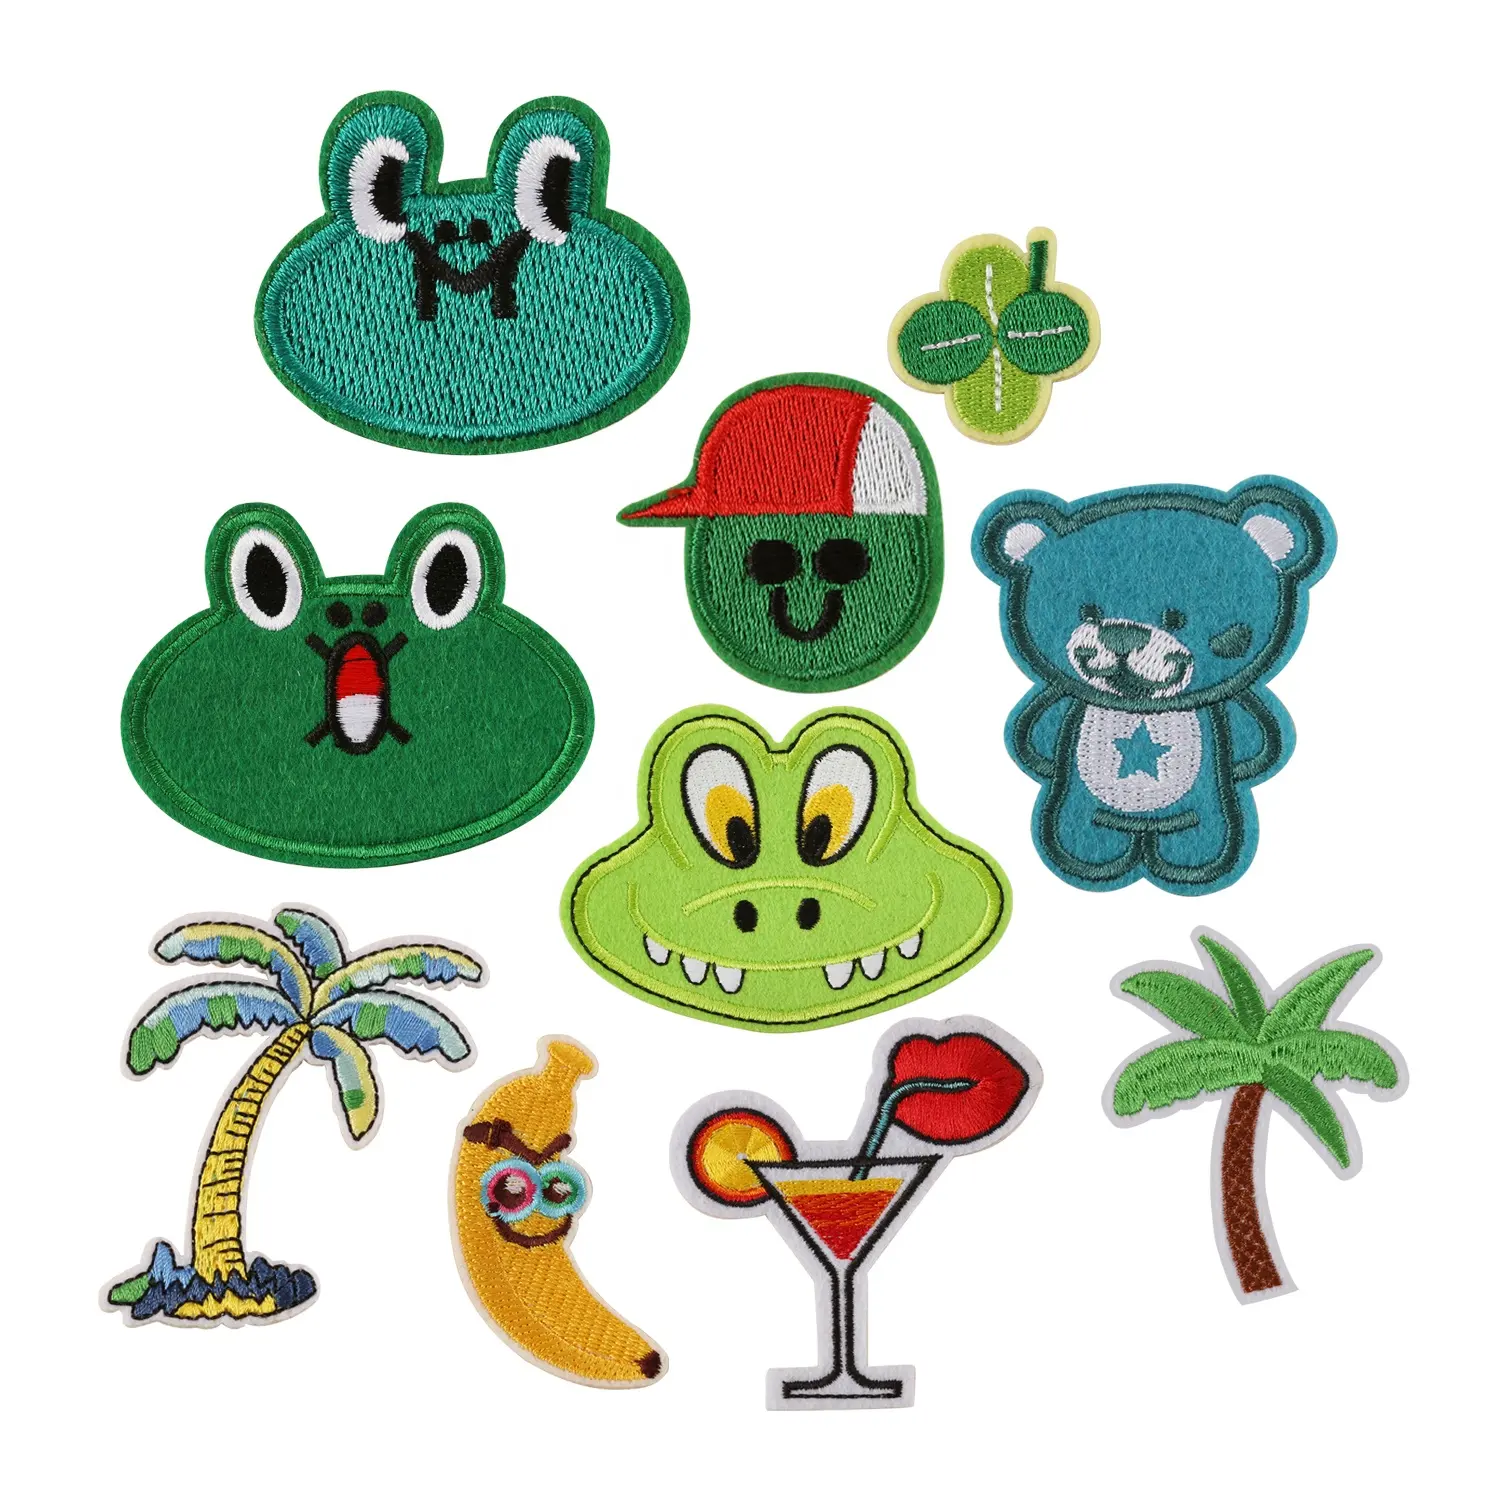 Bügeln Sie auf Kleidung Stickerei Dschungel Thema Baum Krokodil Frosch Patches für Kinder